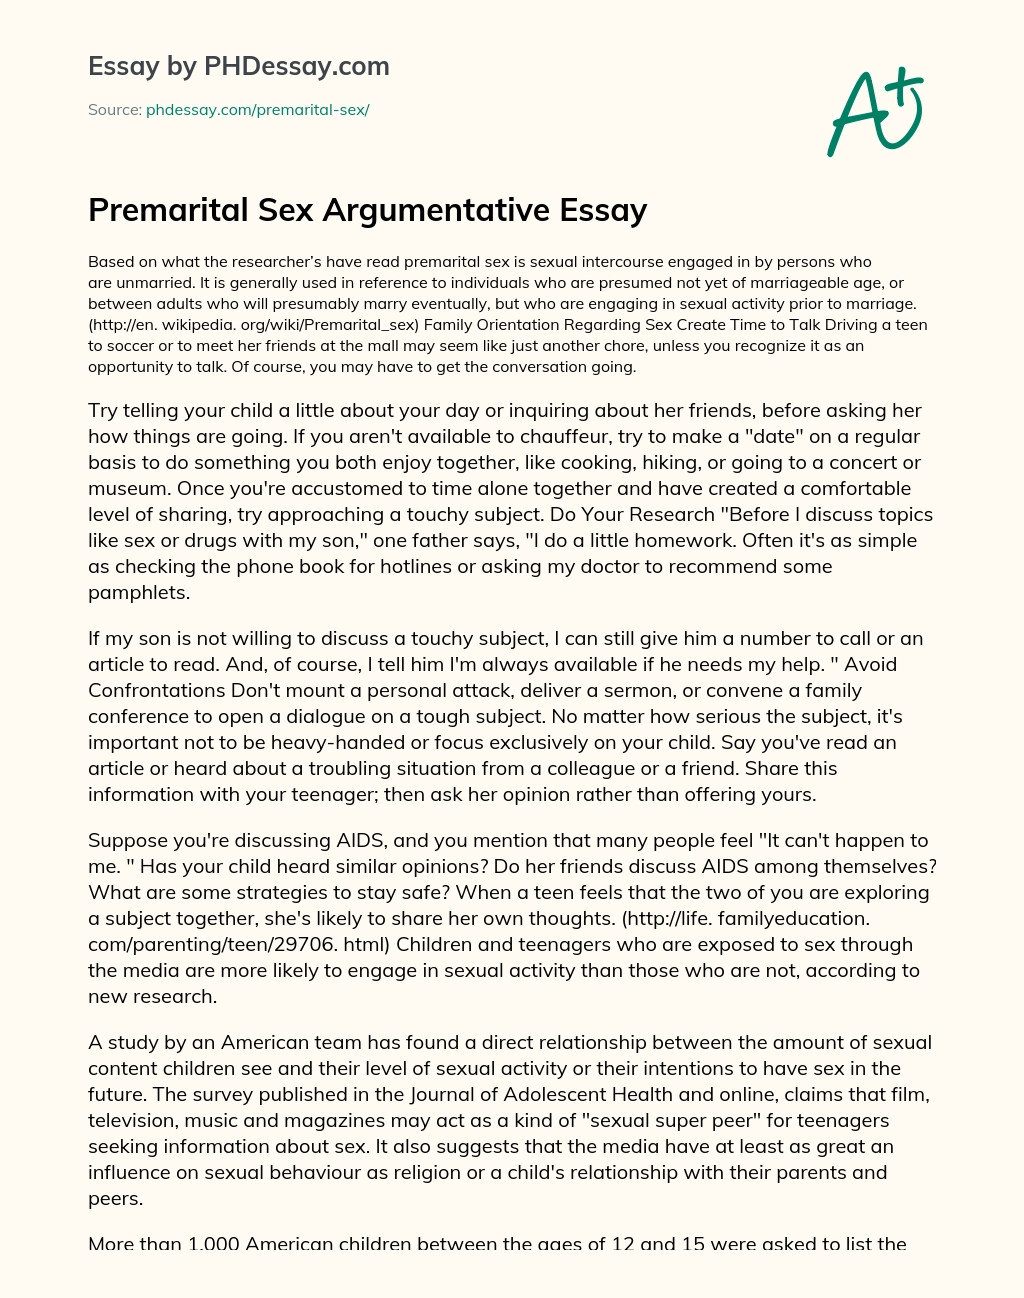 Premarital Sex Argumentative Essay essay